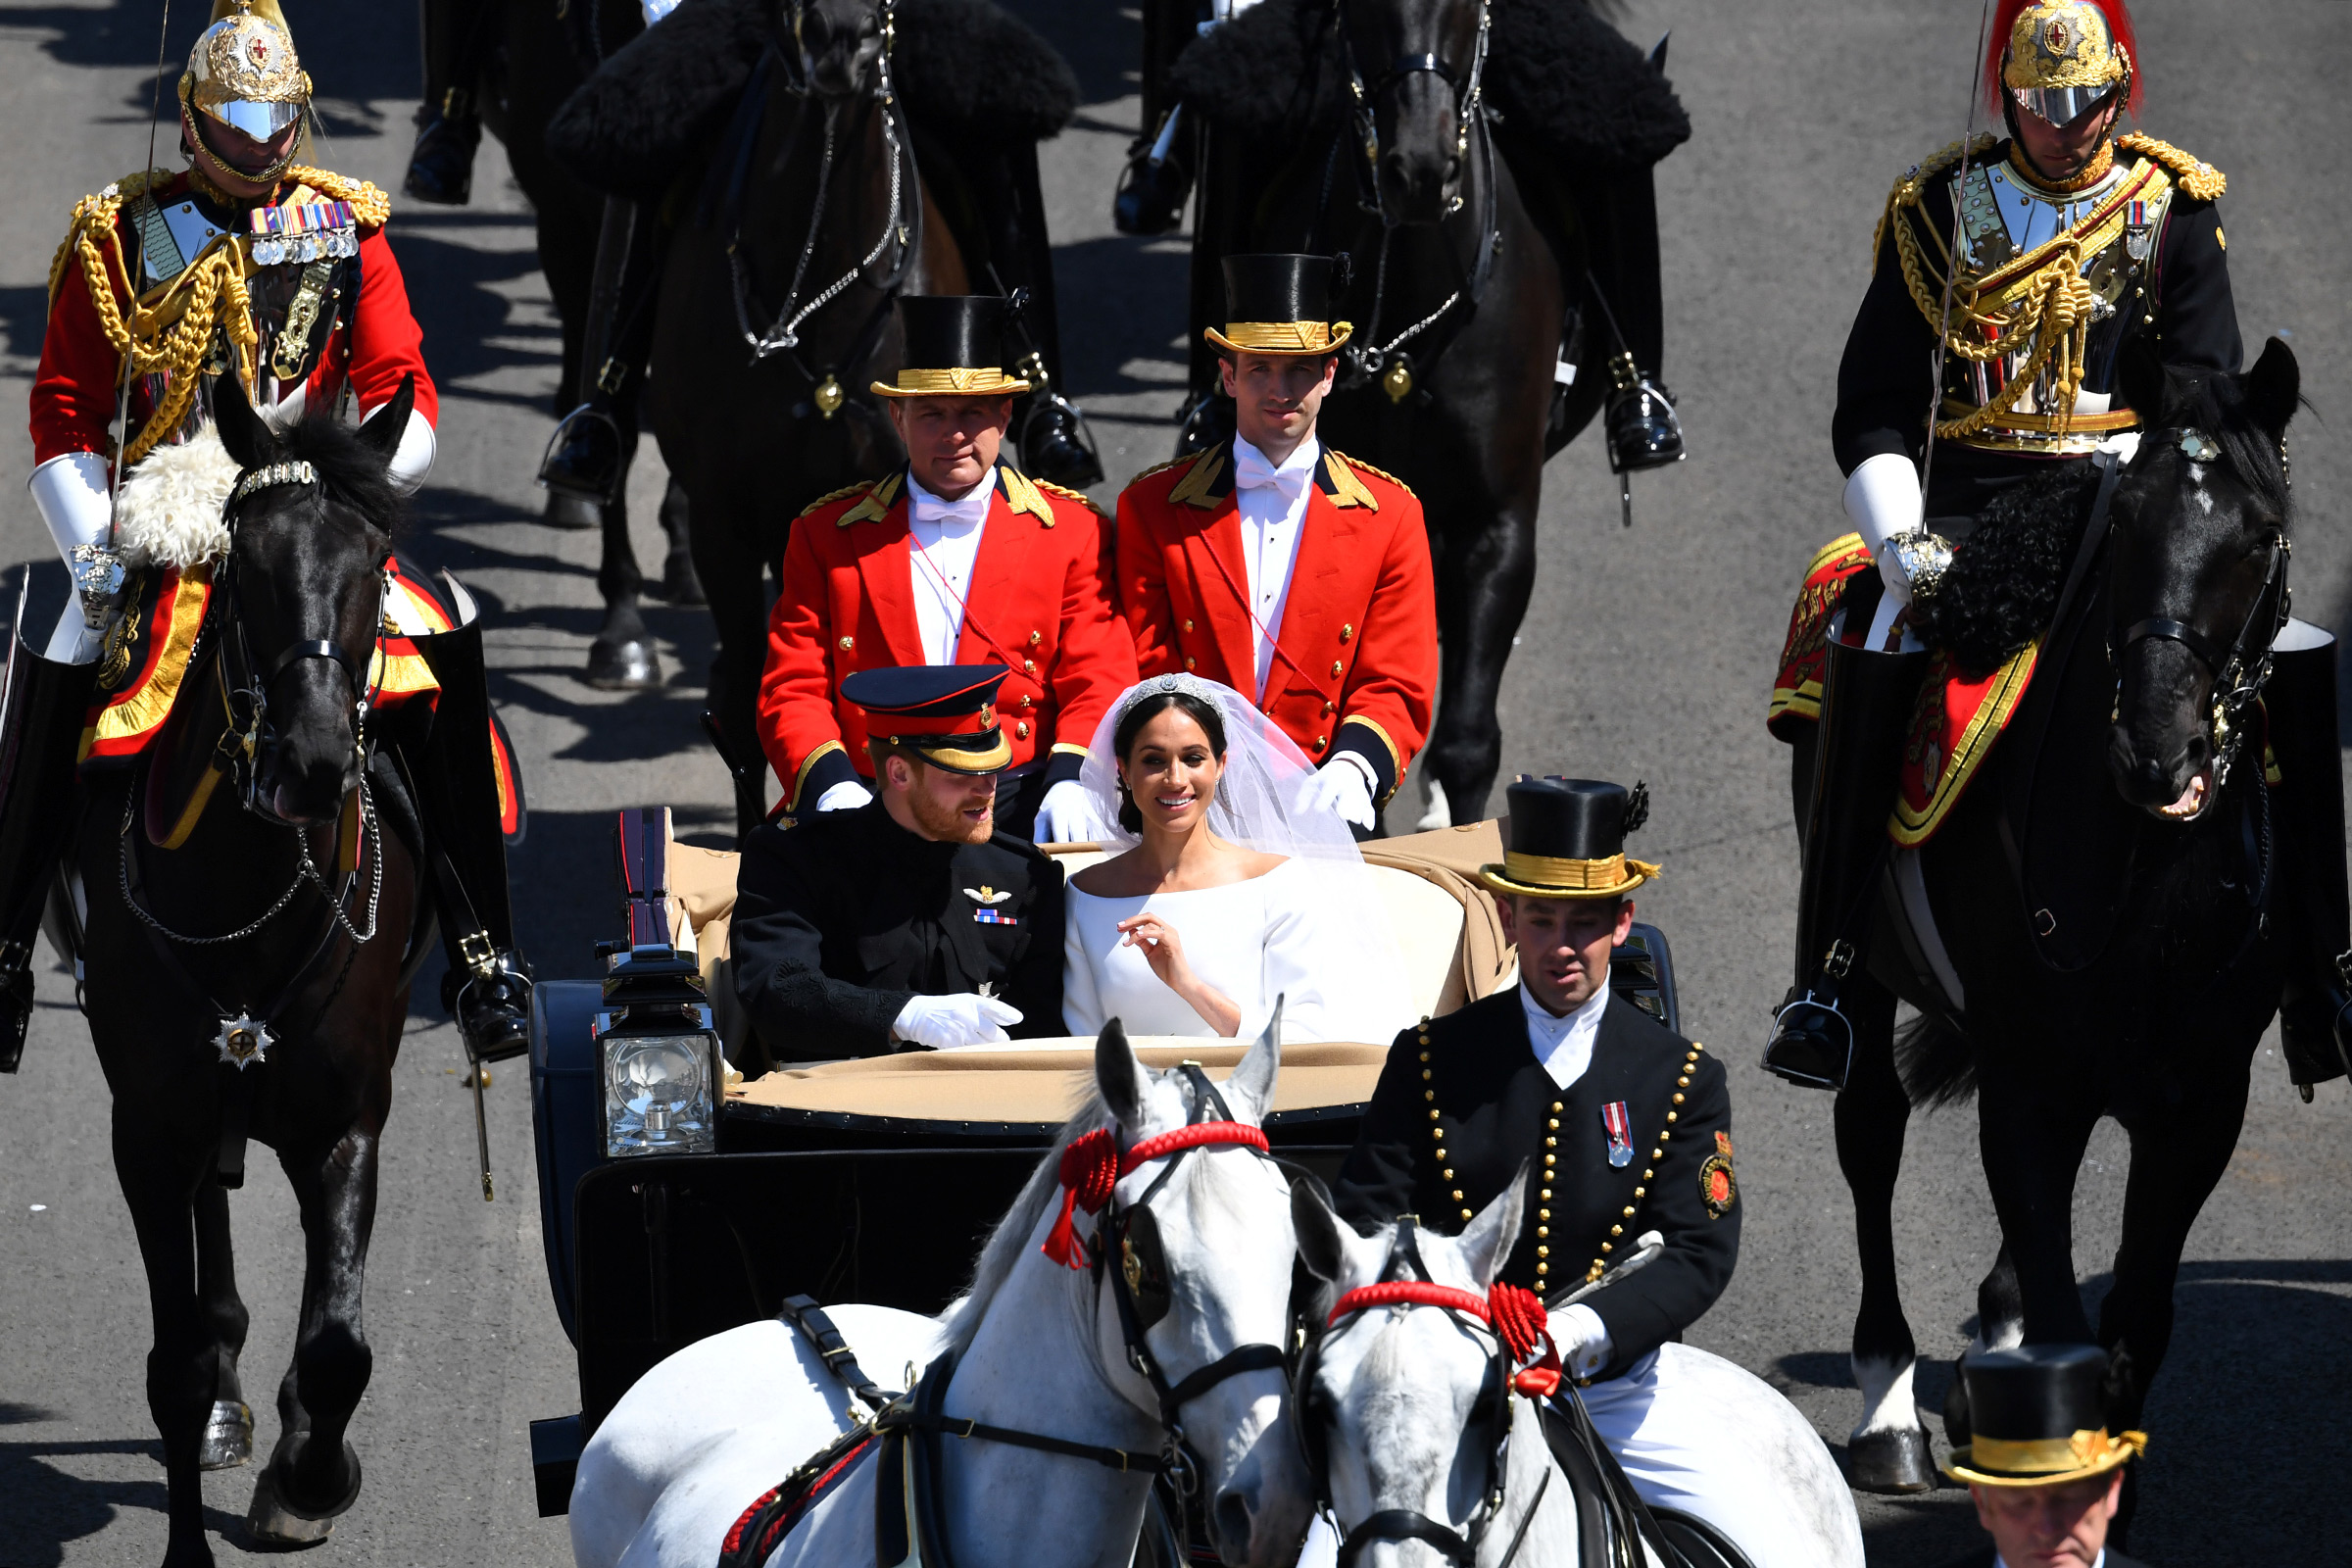 После церемонии пара проехала по Лондону в карете. Затем они отправятся на прием для 600 самых близких гостей, а после &mdash; в свадебное путешествие, которое пройдет в Намибии.